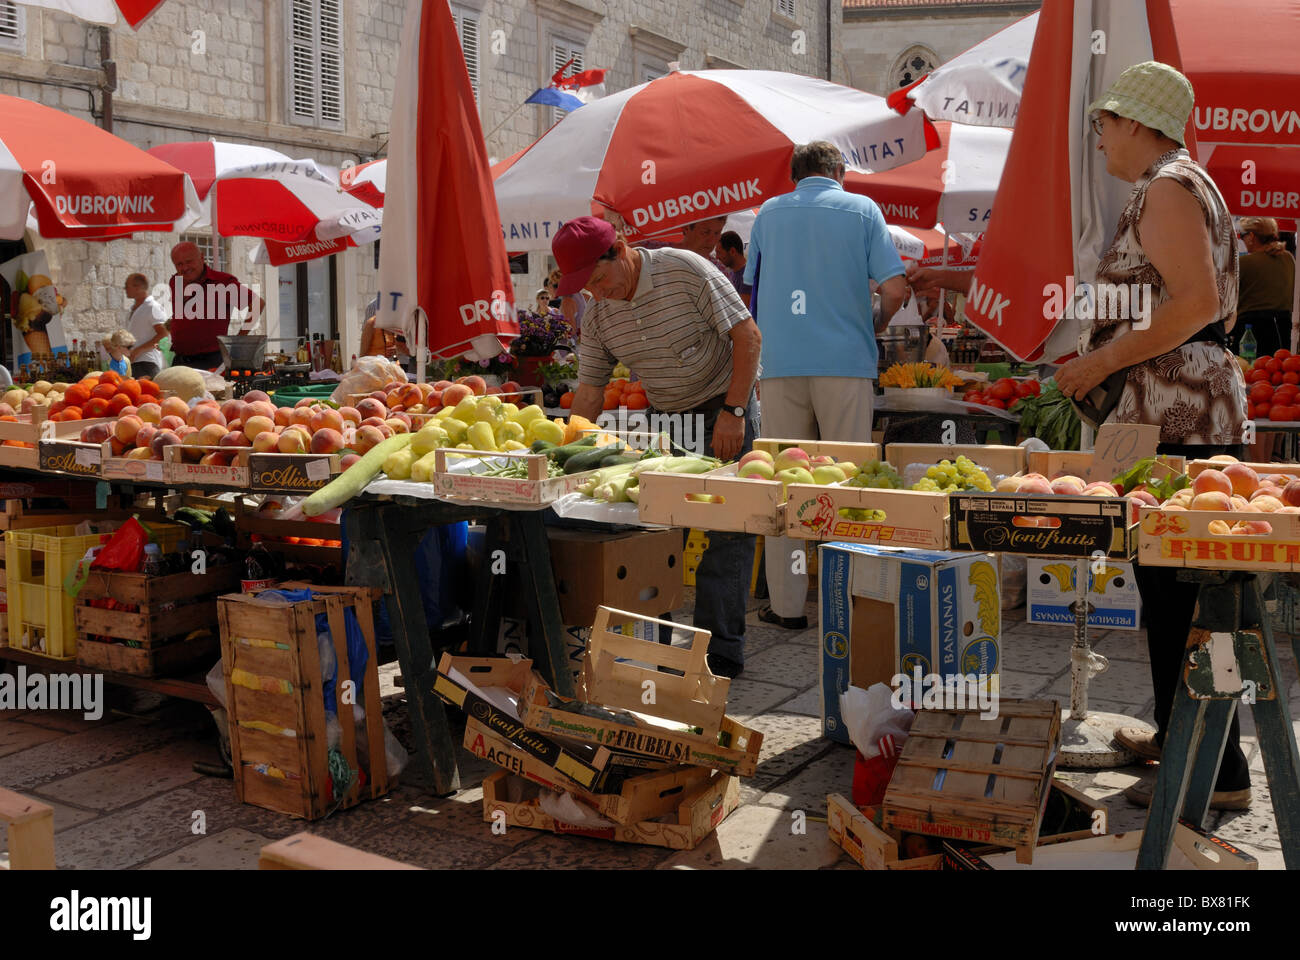 Einem anstrengenden Vormittag Markt auf dem Platz Gunduliceva Poljana. Die Gemüse- und Stände sind voll von frischen Produkten und die... Stockfoto